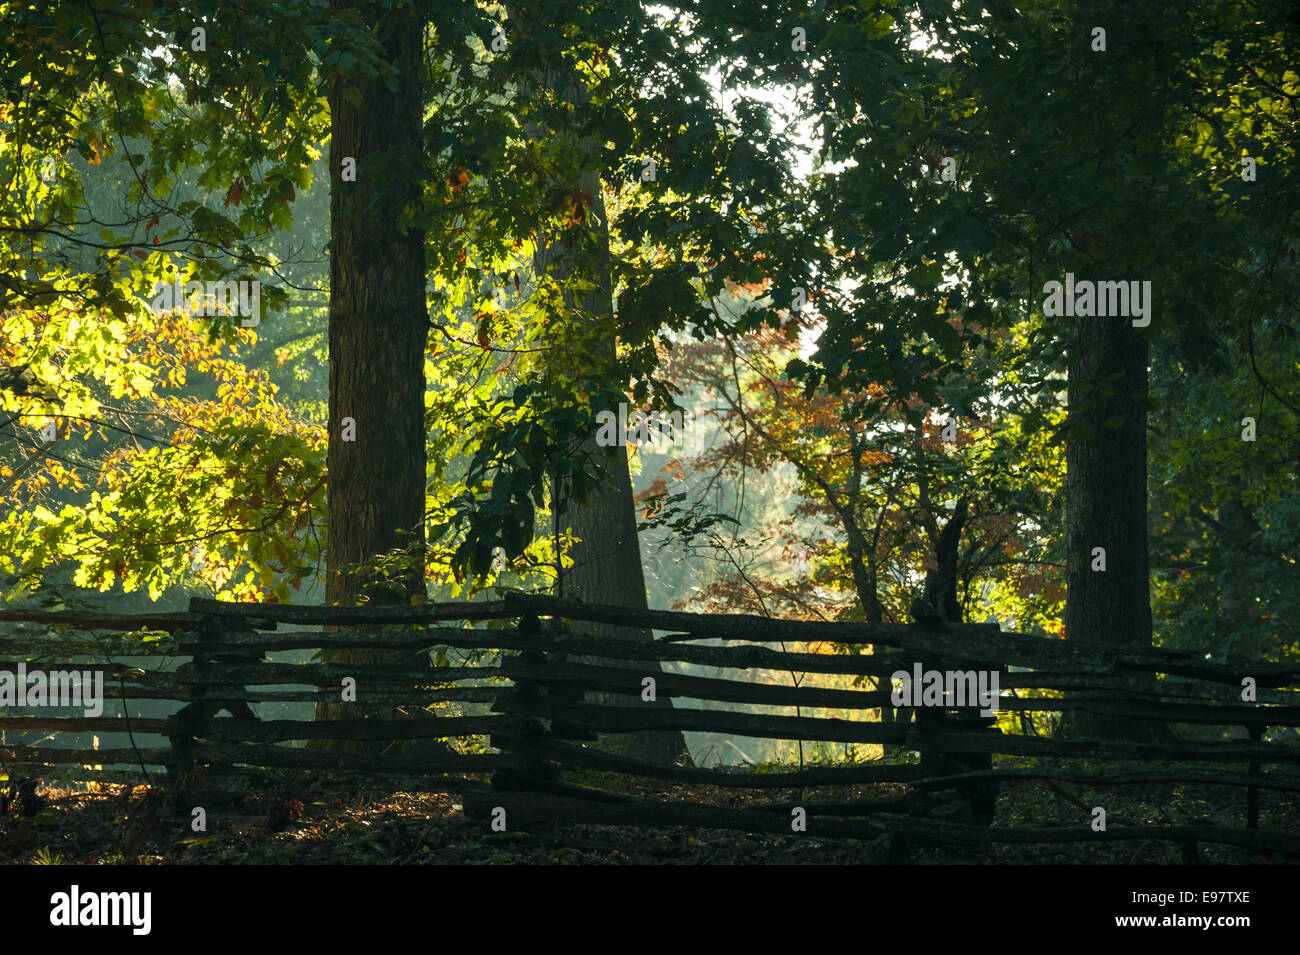 Sunlit trees glow beyond a wood timber fence at Stone Mountain Park near Atlanta, Georgia, USA. Stock Photo